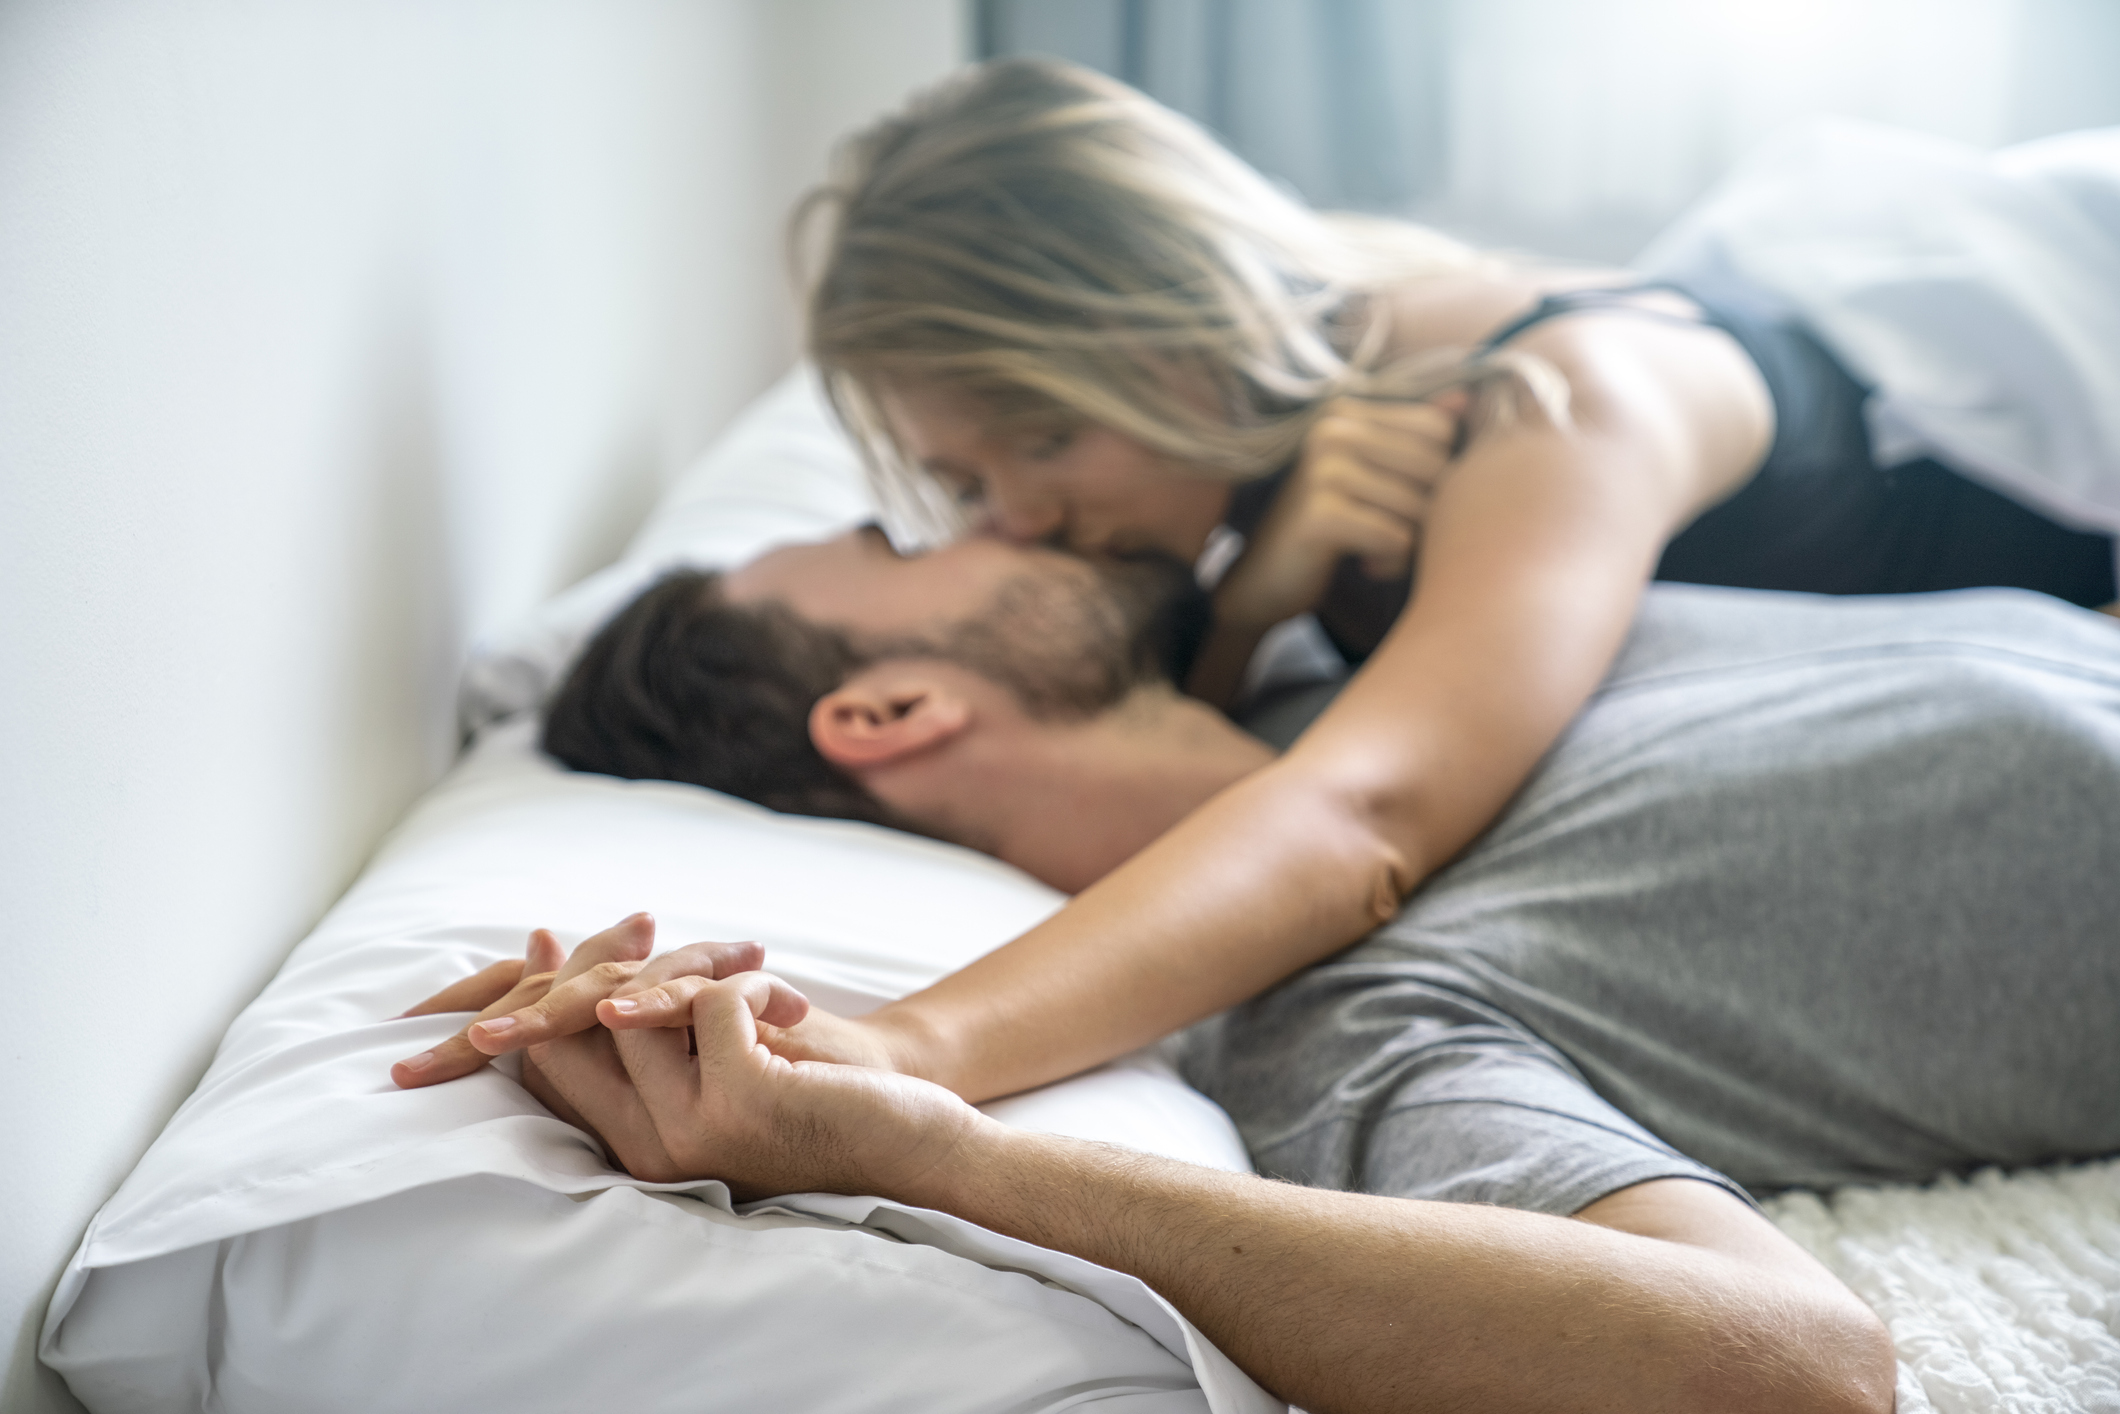 5 szexpóz amivel a szex tovabb tart